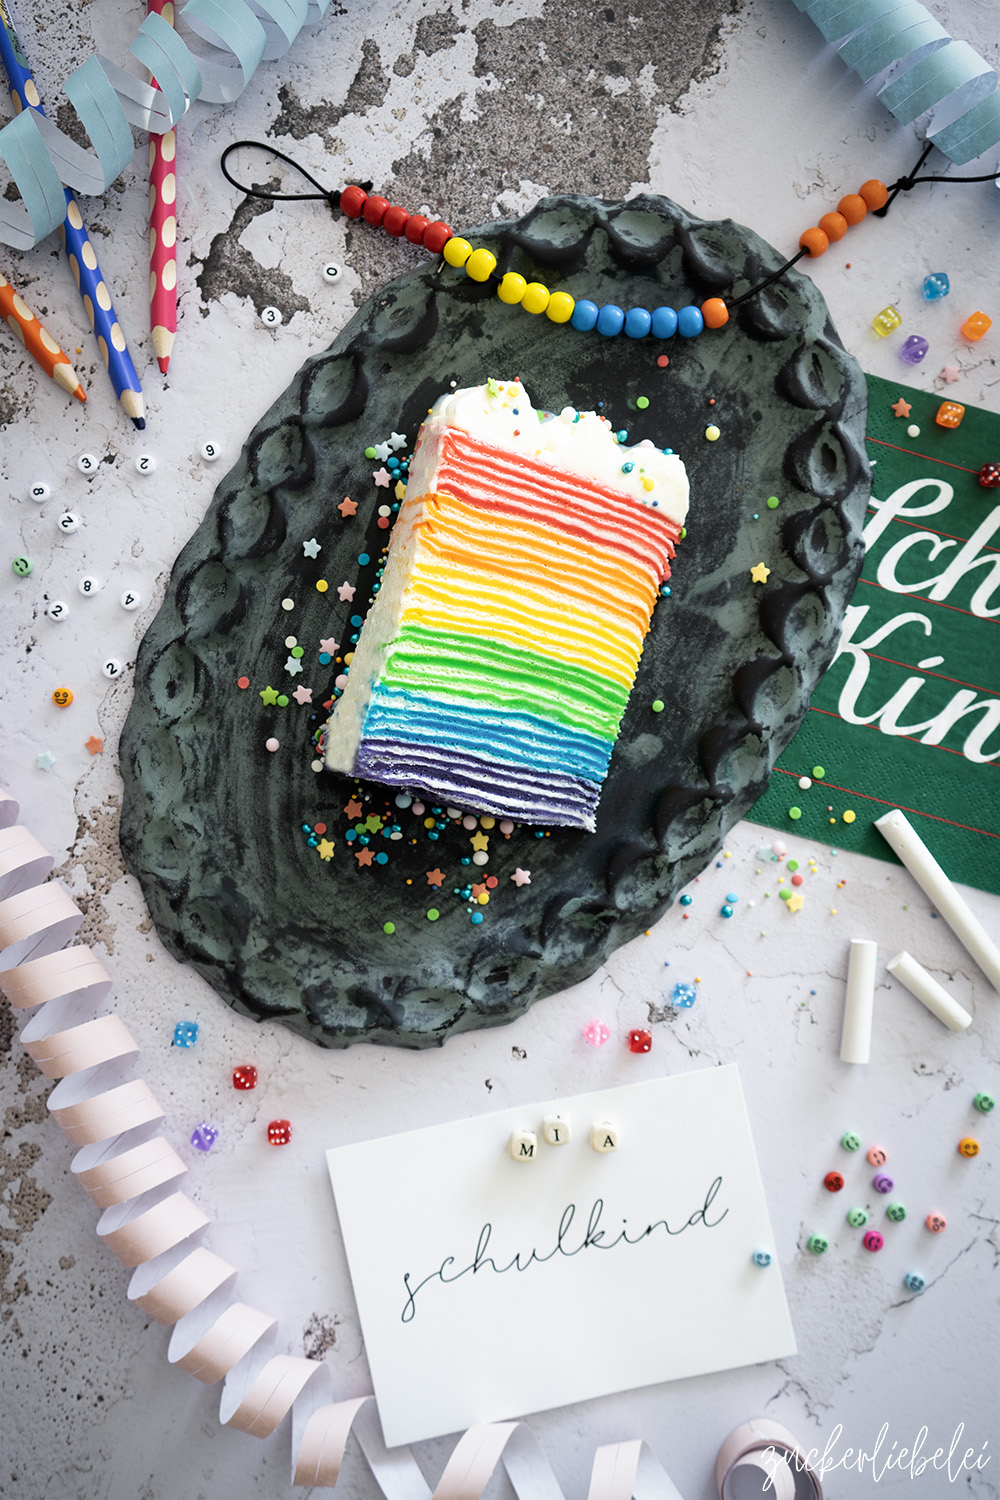 Mia's Regenbogen Crêpe Torte zur Einschulung | Rainbow Crêpe Cake